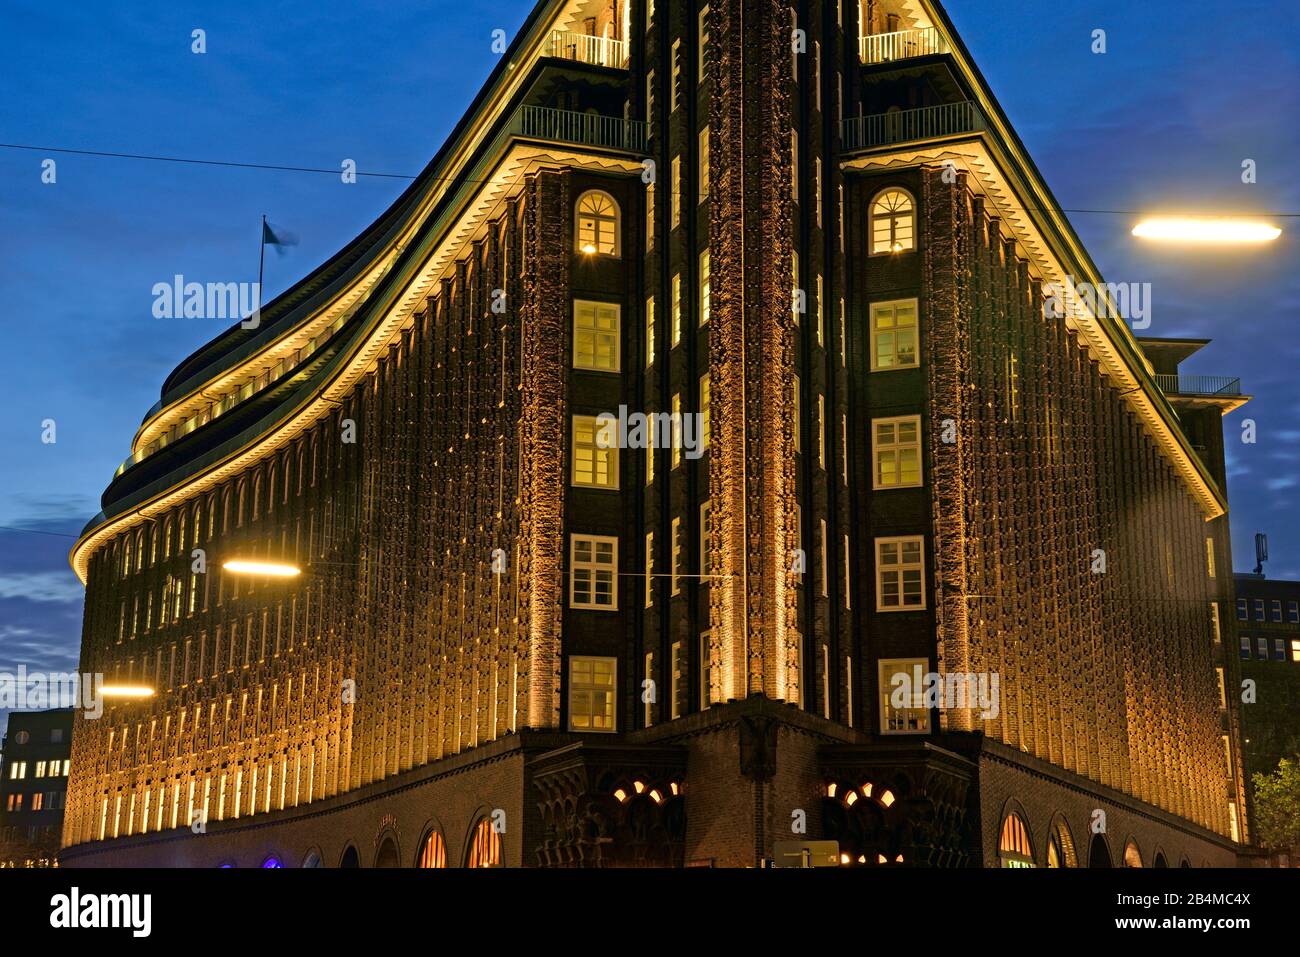 Europe, Allemagne, Hambourg, Ville, Kontorhausviertel, Chilehaus, façade clinker, construite de 1922 à 1924 par Fritz Höger, site du patrimoine mondial, nuit, extrémité pignon, détail Banque D'Images